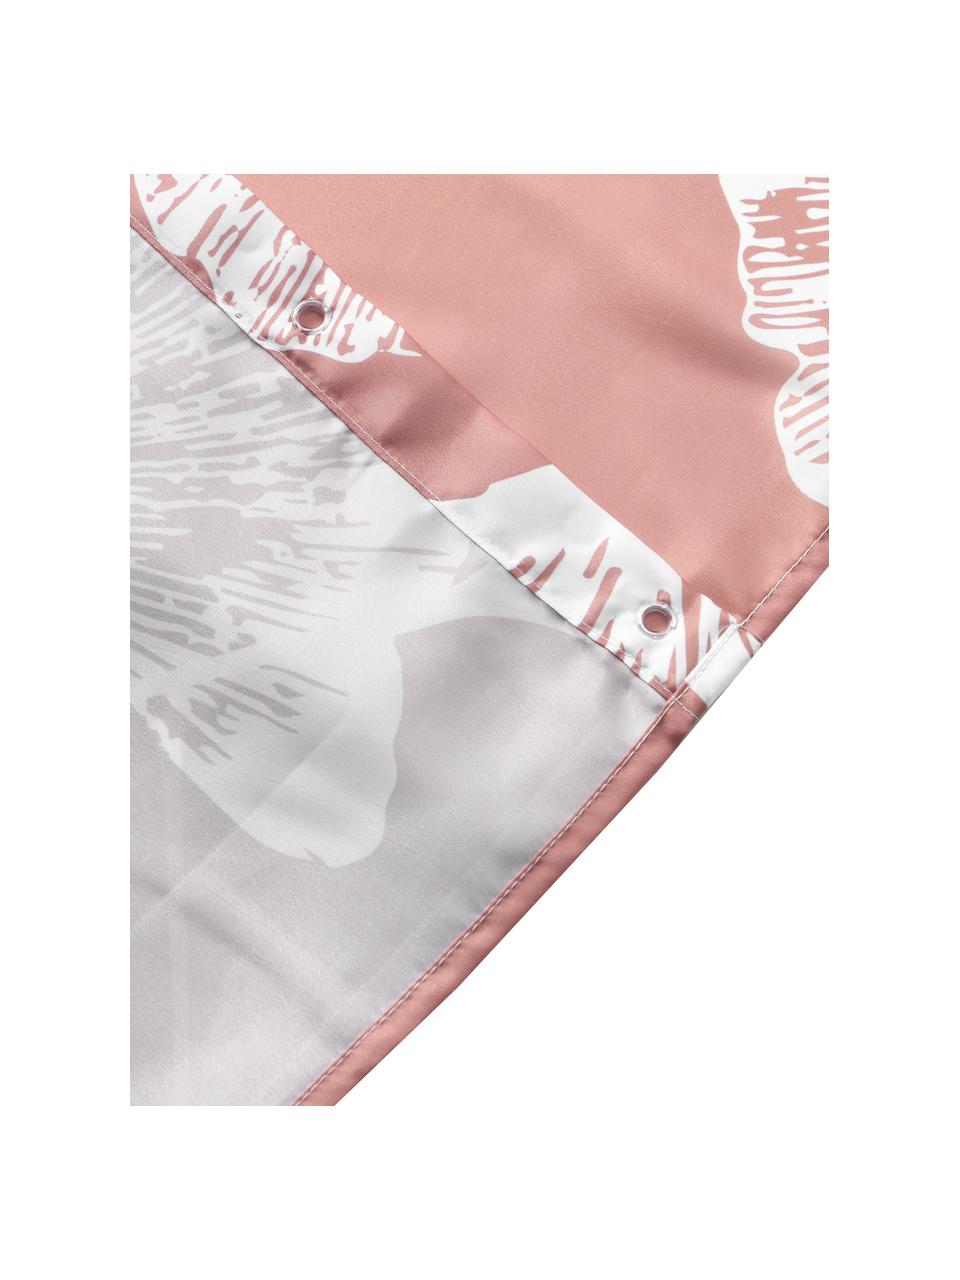 Sprchový závěs Mare, 100 % polyester, Tmavě růžová, bílá, Š 180 cm, D 200 cm